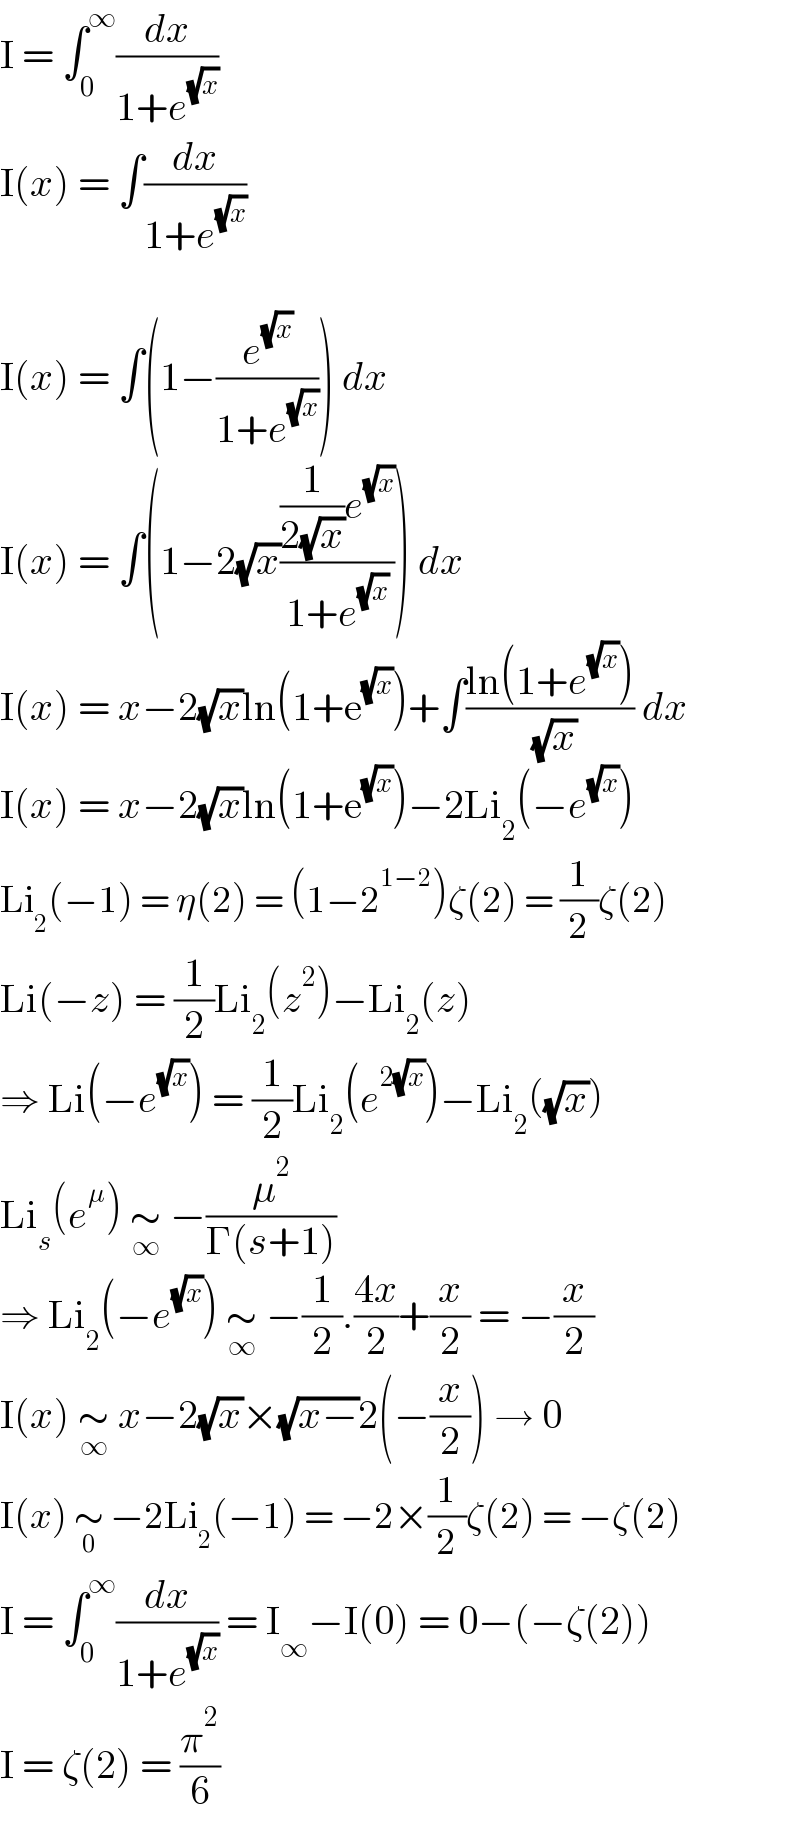 I = ∫_0 ^∞ (dx/(1+e^(√x) ))  I(x) = ∫(dx/(1+e^(√x) ))    I(x) = ∫(1−(e^(√x) /(1+e^(√x) ))) dx  I(x) = ∫(1−2(√x)(((1/(2(√x)))e^(√x) )/(1+e^(√x) ))) dx  I(x) = x−2(√x)ln(1+e^(√x) )+∫((ln(1+e^(√x) ))/( (√x))) dx  I(x) = x−2(√x)ln(1+e^(√x) )−2Li_2 (−e^(√x) )  Li_2 (−1) = η(2) = (1−2^(1−2) )ζ(2) = (1/2)ζ(2)  Li(−z) = (1/2)Li_2 (z^2 )−Li_2 (z)  ⇒ Li(−e^(√x) ) = (1/2)Li_2 (e^(2(√x)) )−Li_2 ((√x))  Li_s (e^μ ) ∼_∞  −(μ^2 /(Γ(s+1)))  ⇒ Li_2 (−e^(√x) ) ∼_∞  −(1/2).((4x)/2)+(x/2) = −(x/2)  I(x) ∼_∞  x−2(√x)×(√(x−))2(−(x/2)) → 0  I(x) ∼_0  −2Li_2 (−1) = −2×(1/2)ζ(2) = −ζ(2)  I = ∫_0 ^∞ (dx/(1+e^(√x) )) = I_∞ −I(0) = 0−(−ζ(2))  I = ζ(2) = (π^2 /6)  